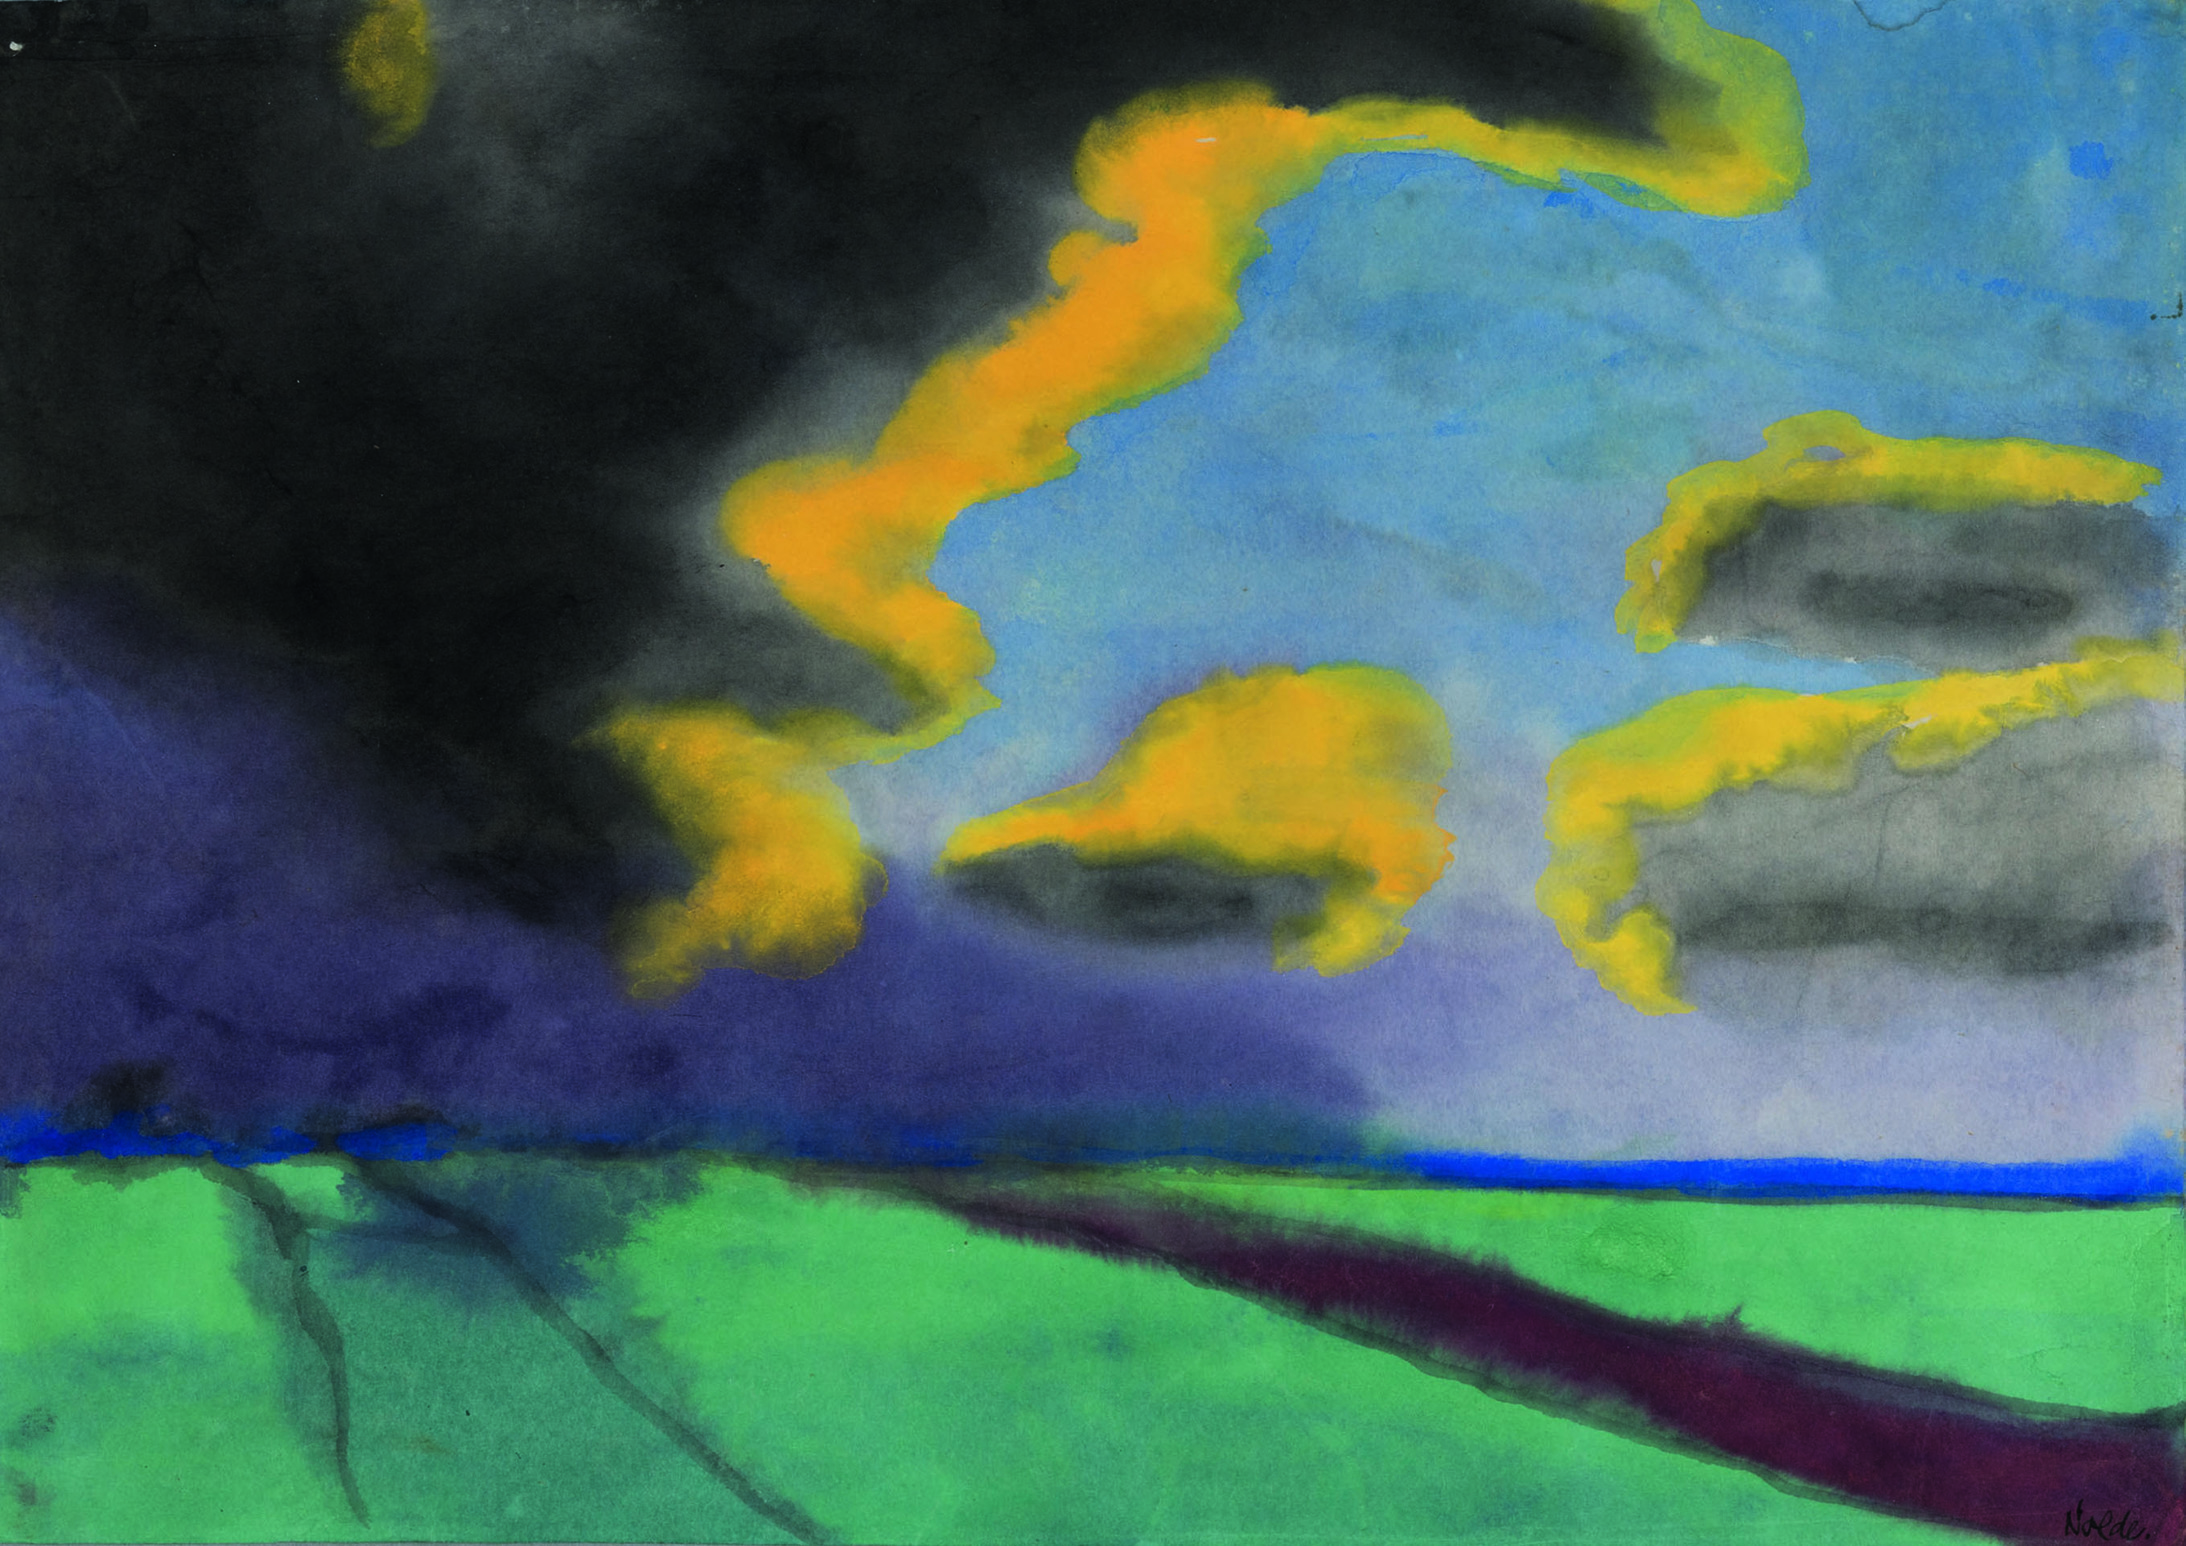 Emil Nolde
Weite Landschaft mit Wolken. O.J.
Aquarell auf Japanpapier. © Kunstmuseum Bern, Legat Cornelius Gurlitt 2014. Provenienz in Abklärung /aktuell kein Raubkunstverdacht
